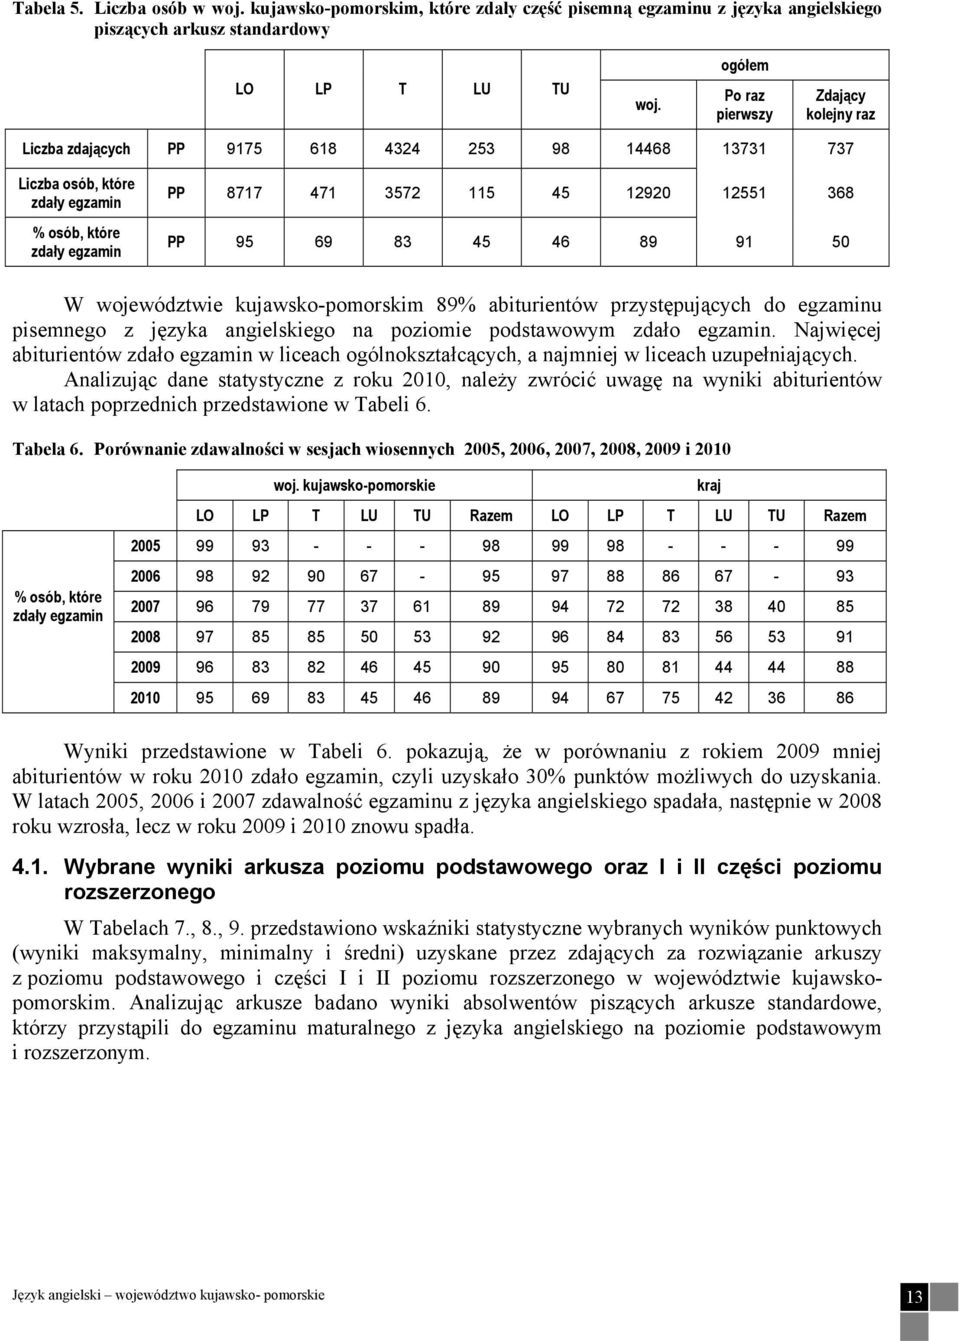 368 PP 95 69 83 45 46 89 91 50 W województwie kujawsko-pomorskim 89% abiturientów przystępujących do egzaminu pisemnego z języka angielskiego na poziomie podstawowym zdało egzamin.